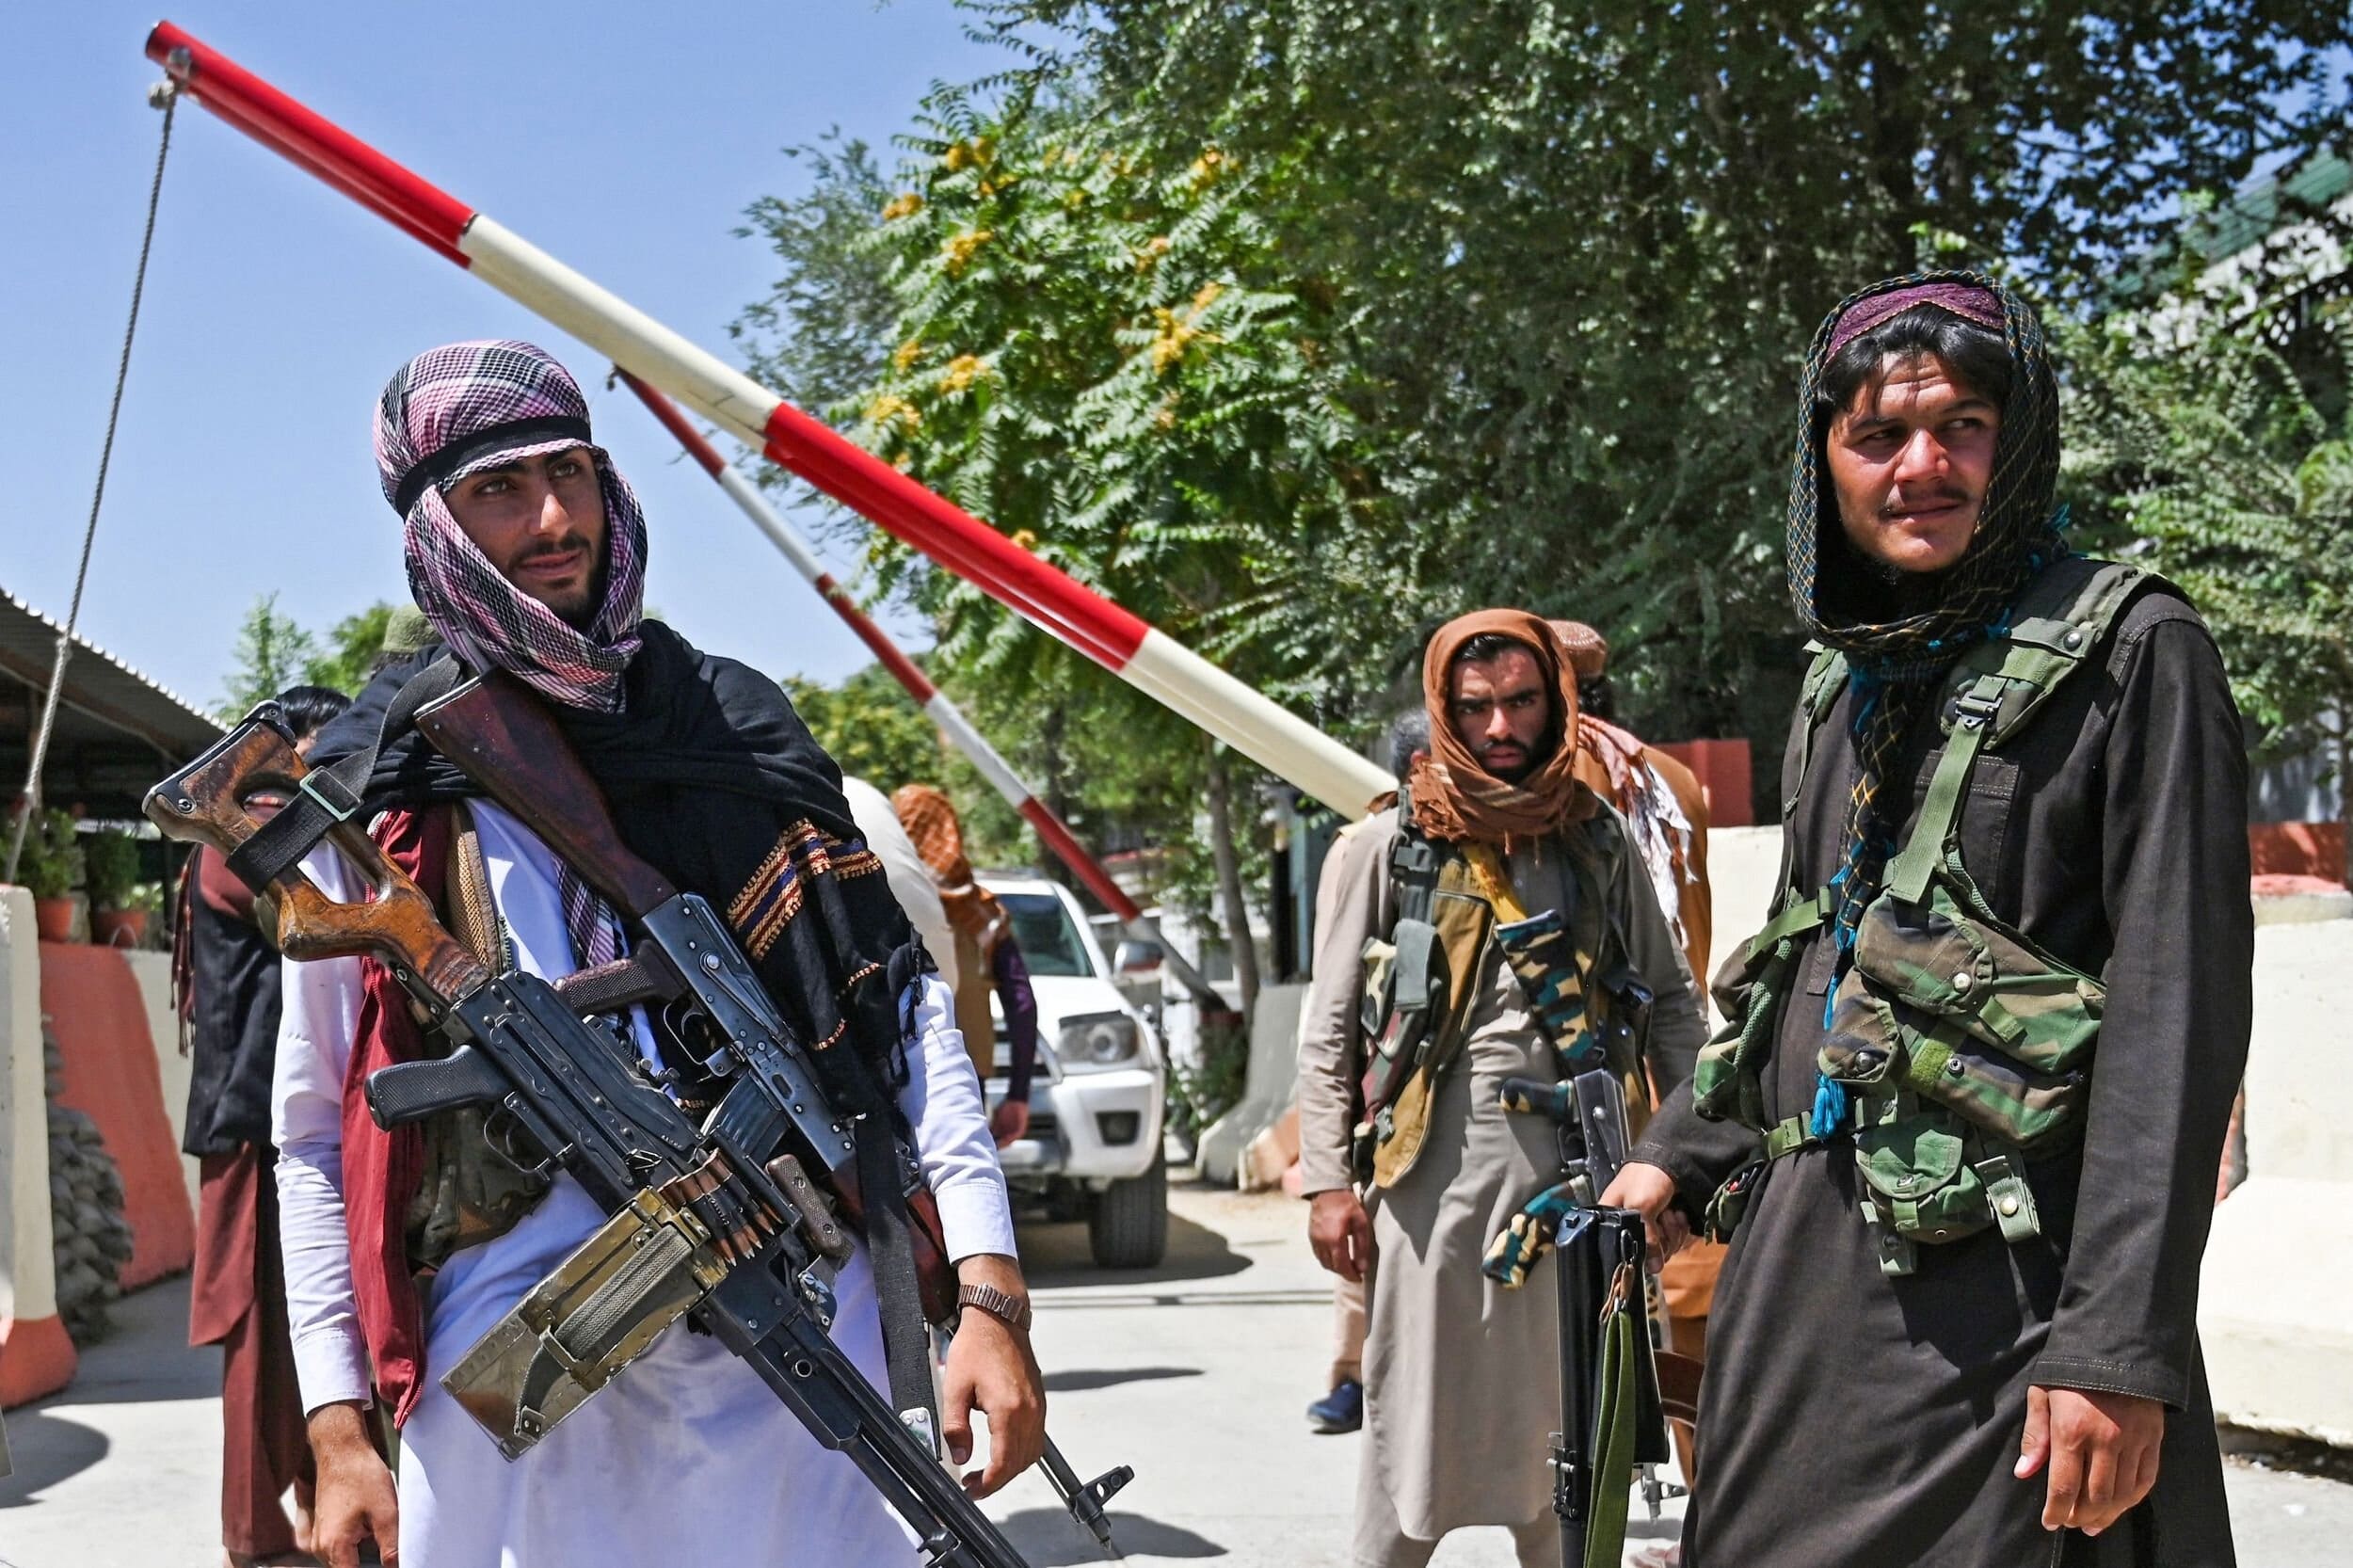 210816 taliban fighters kabul jm 1531 2500x1666 1